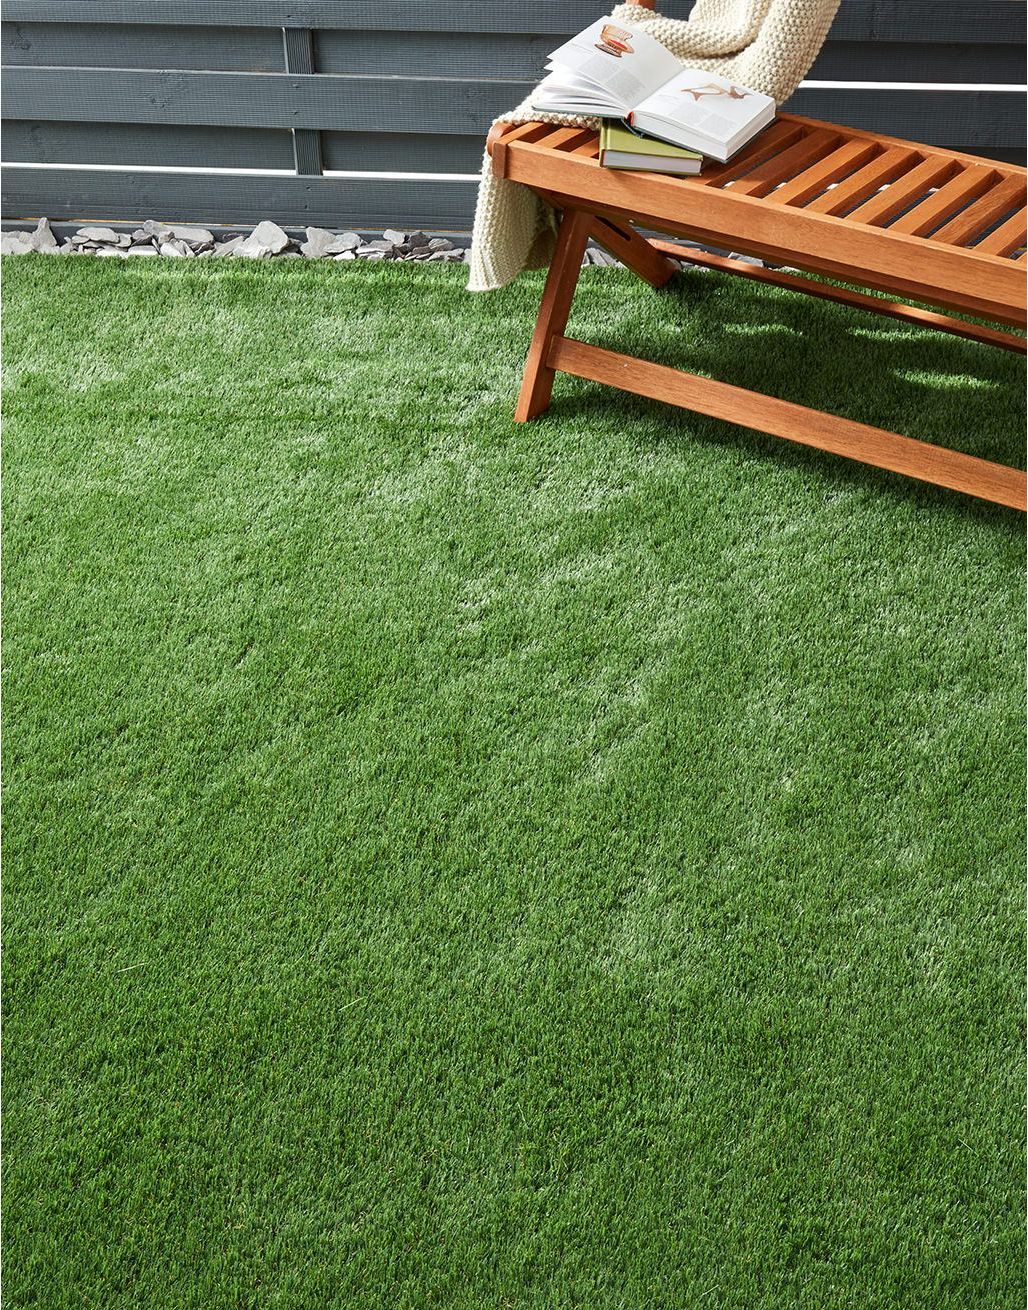 Barcelona Artificial Grass 1